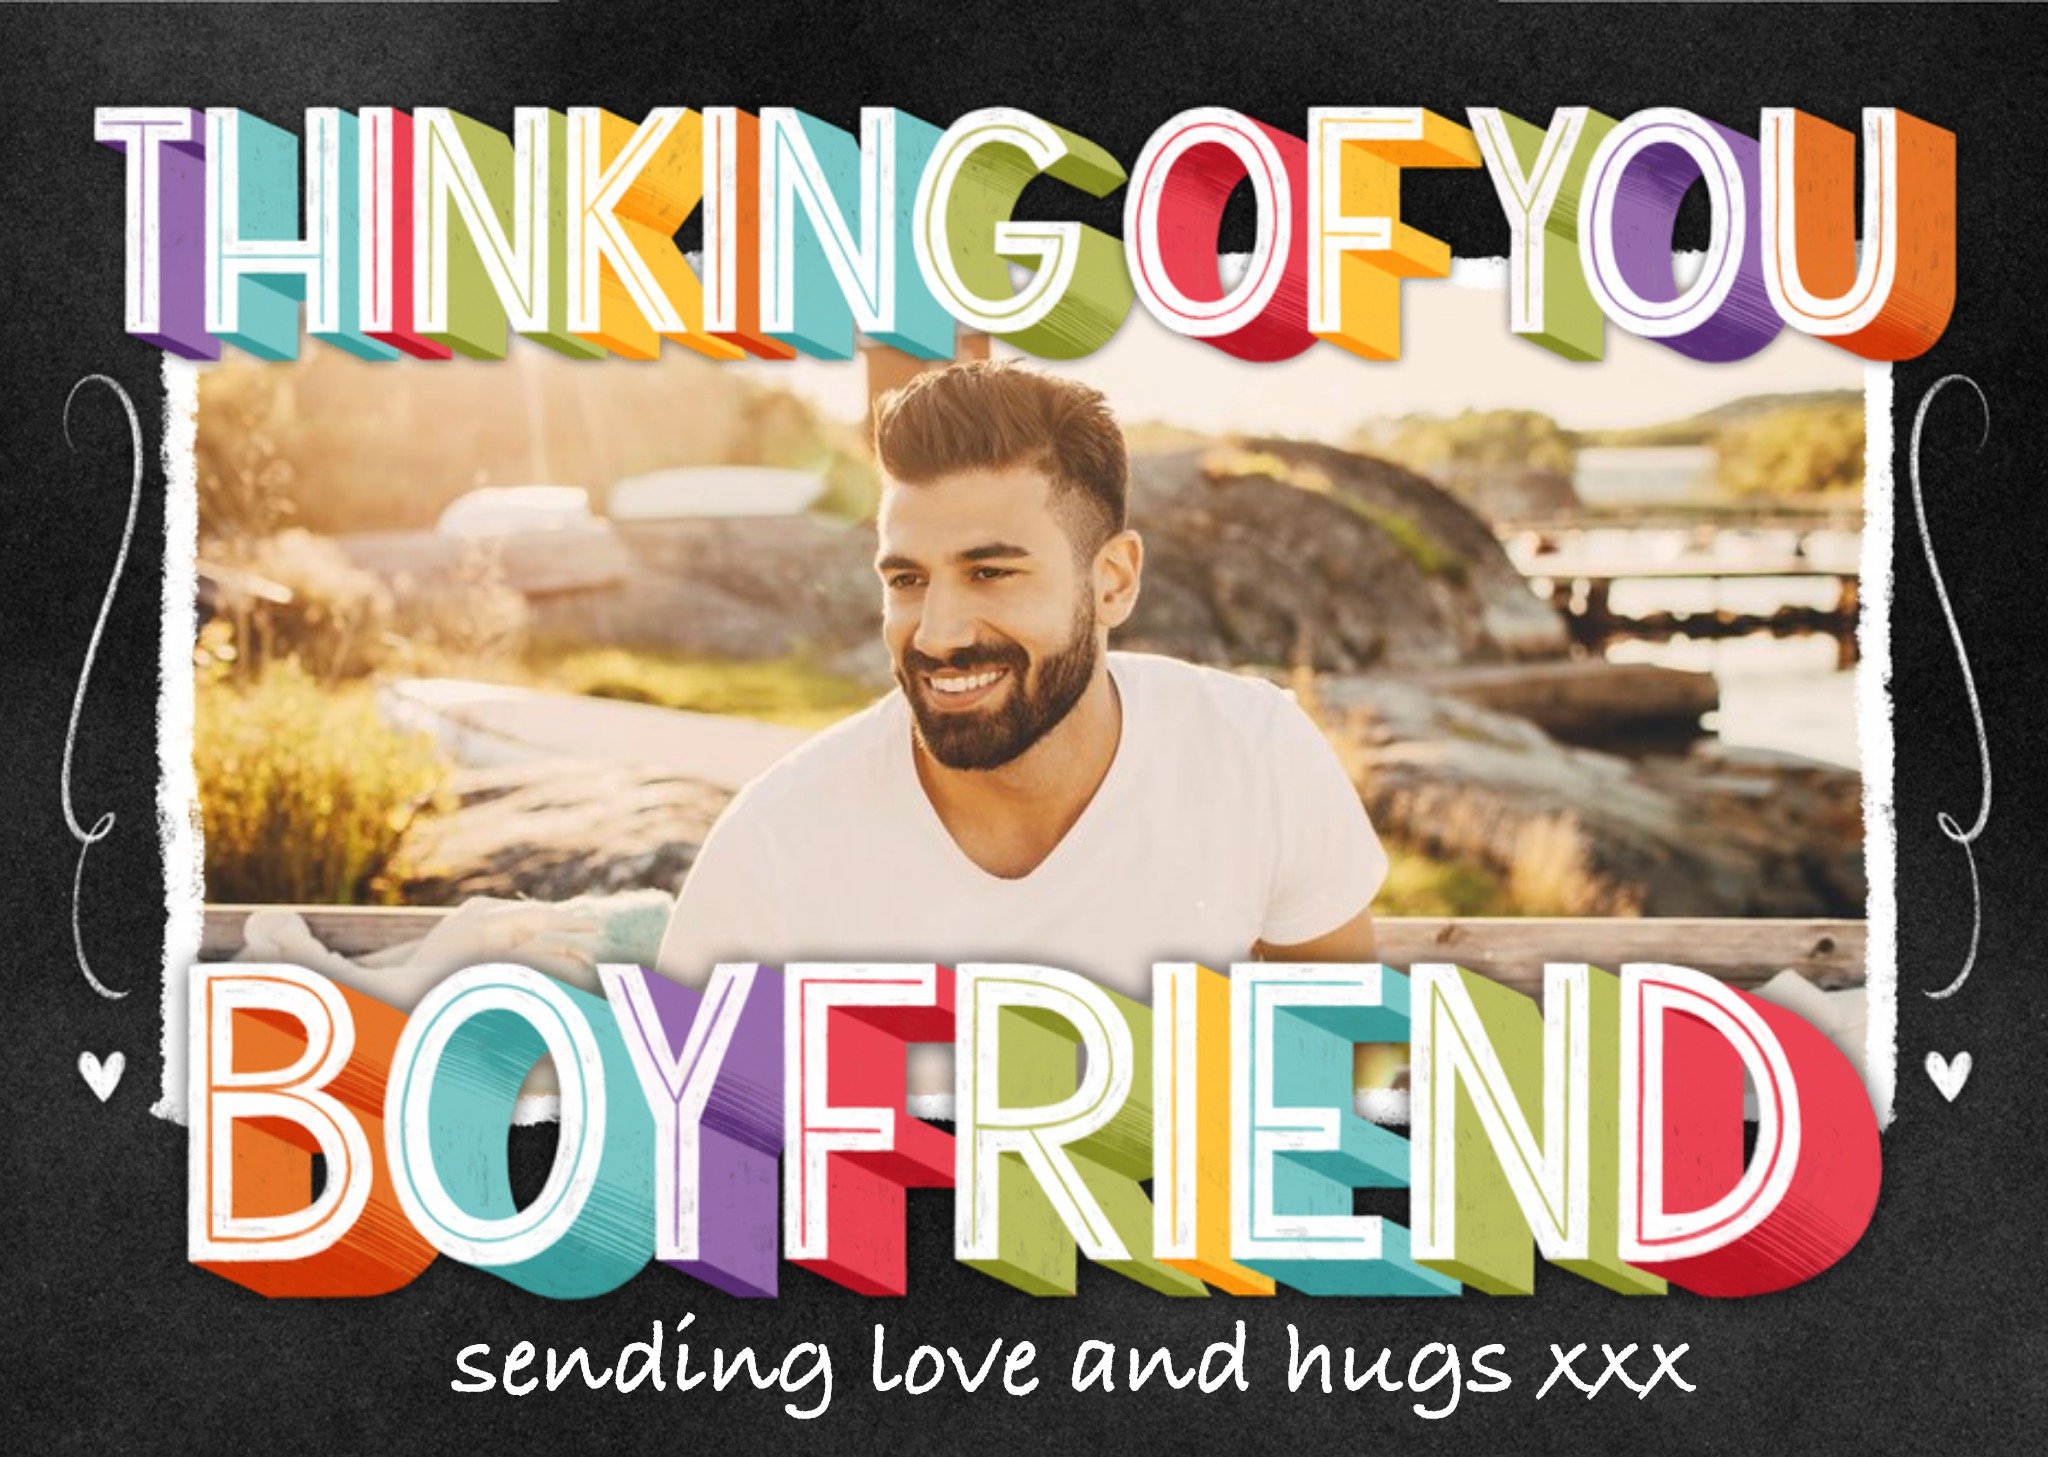 Moonpig Typographic Chalkboard Thinking Of You Boyfriend Photo Upload Card, Large